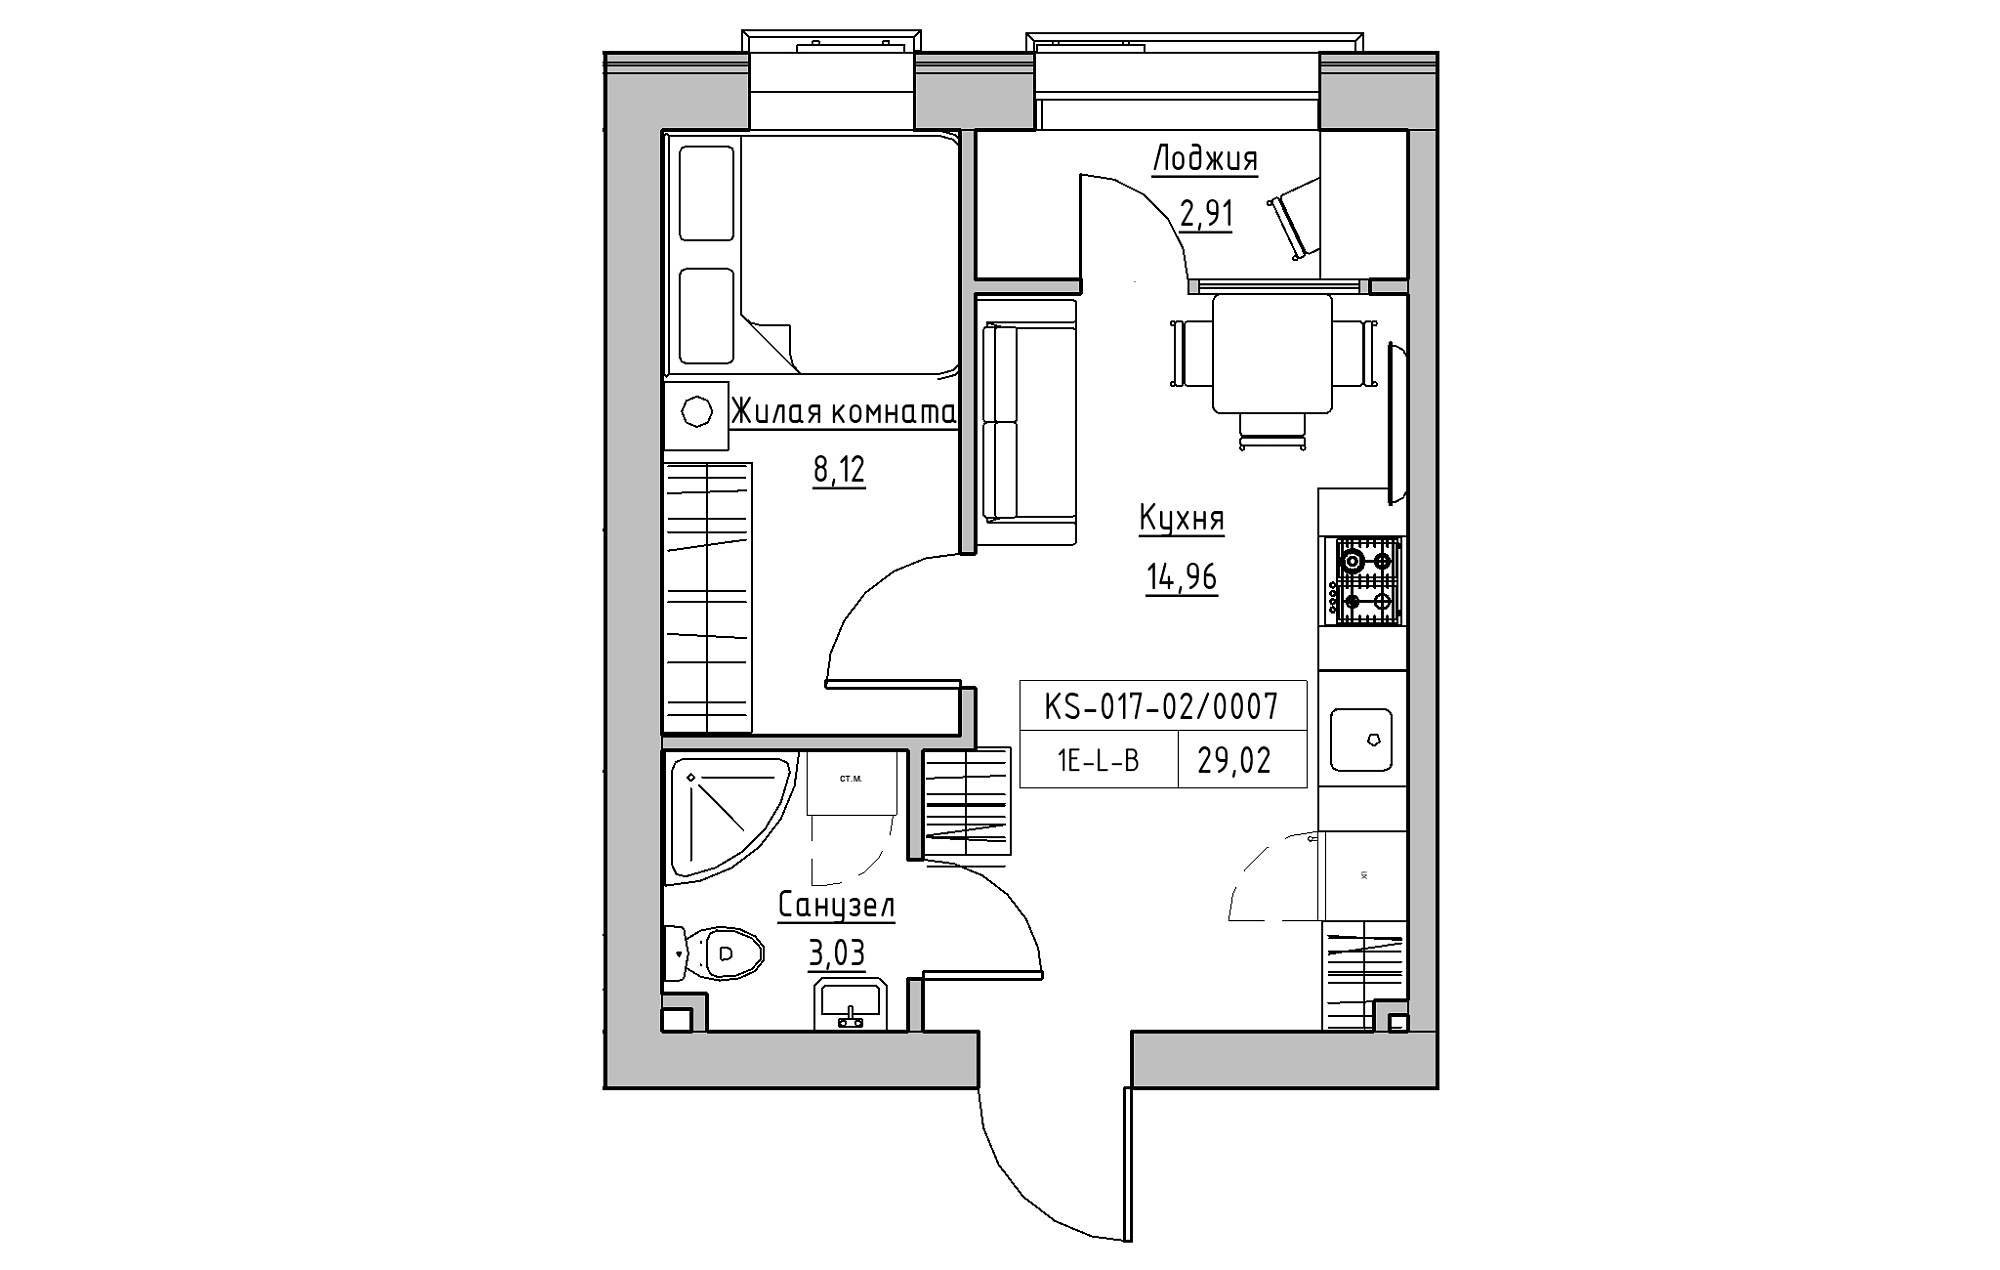 Планировка 1-к квартира площей 29.02м2, KS-017-02/0007.